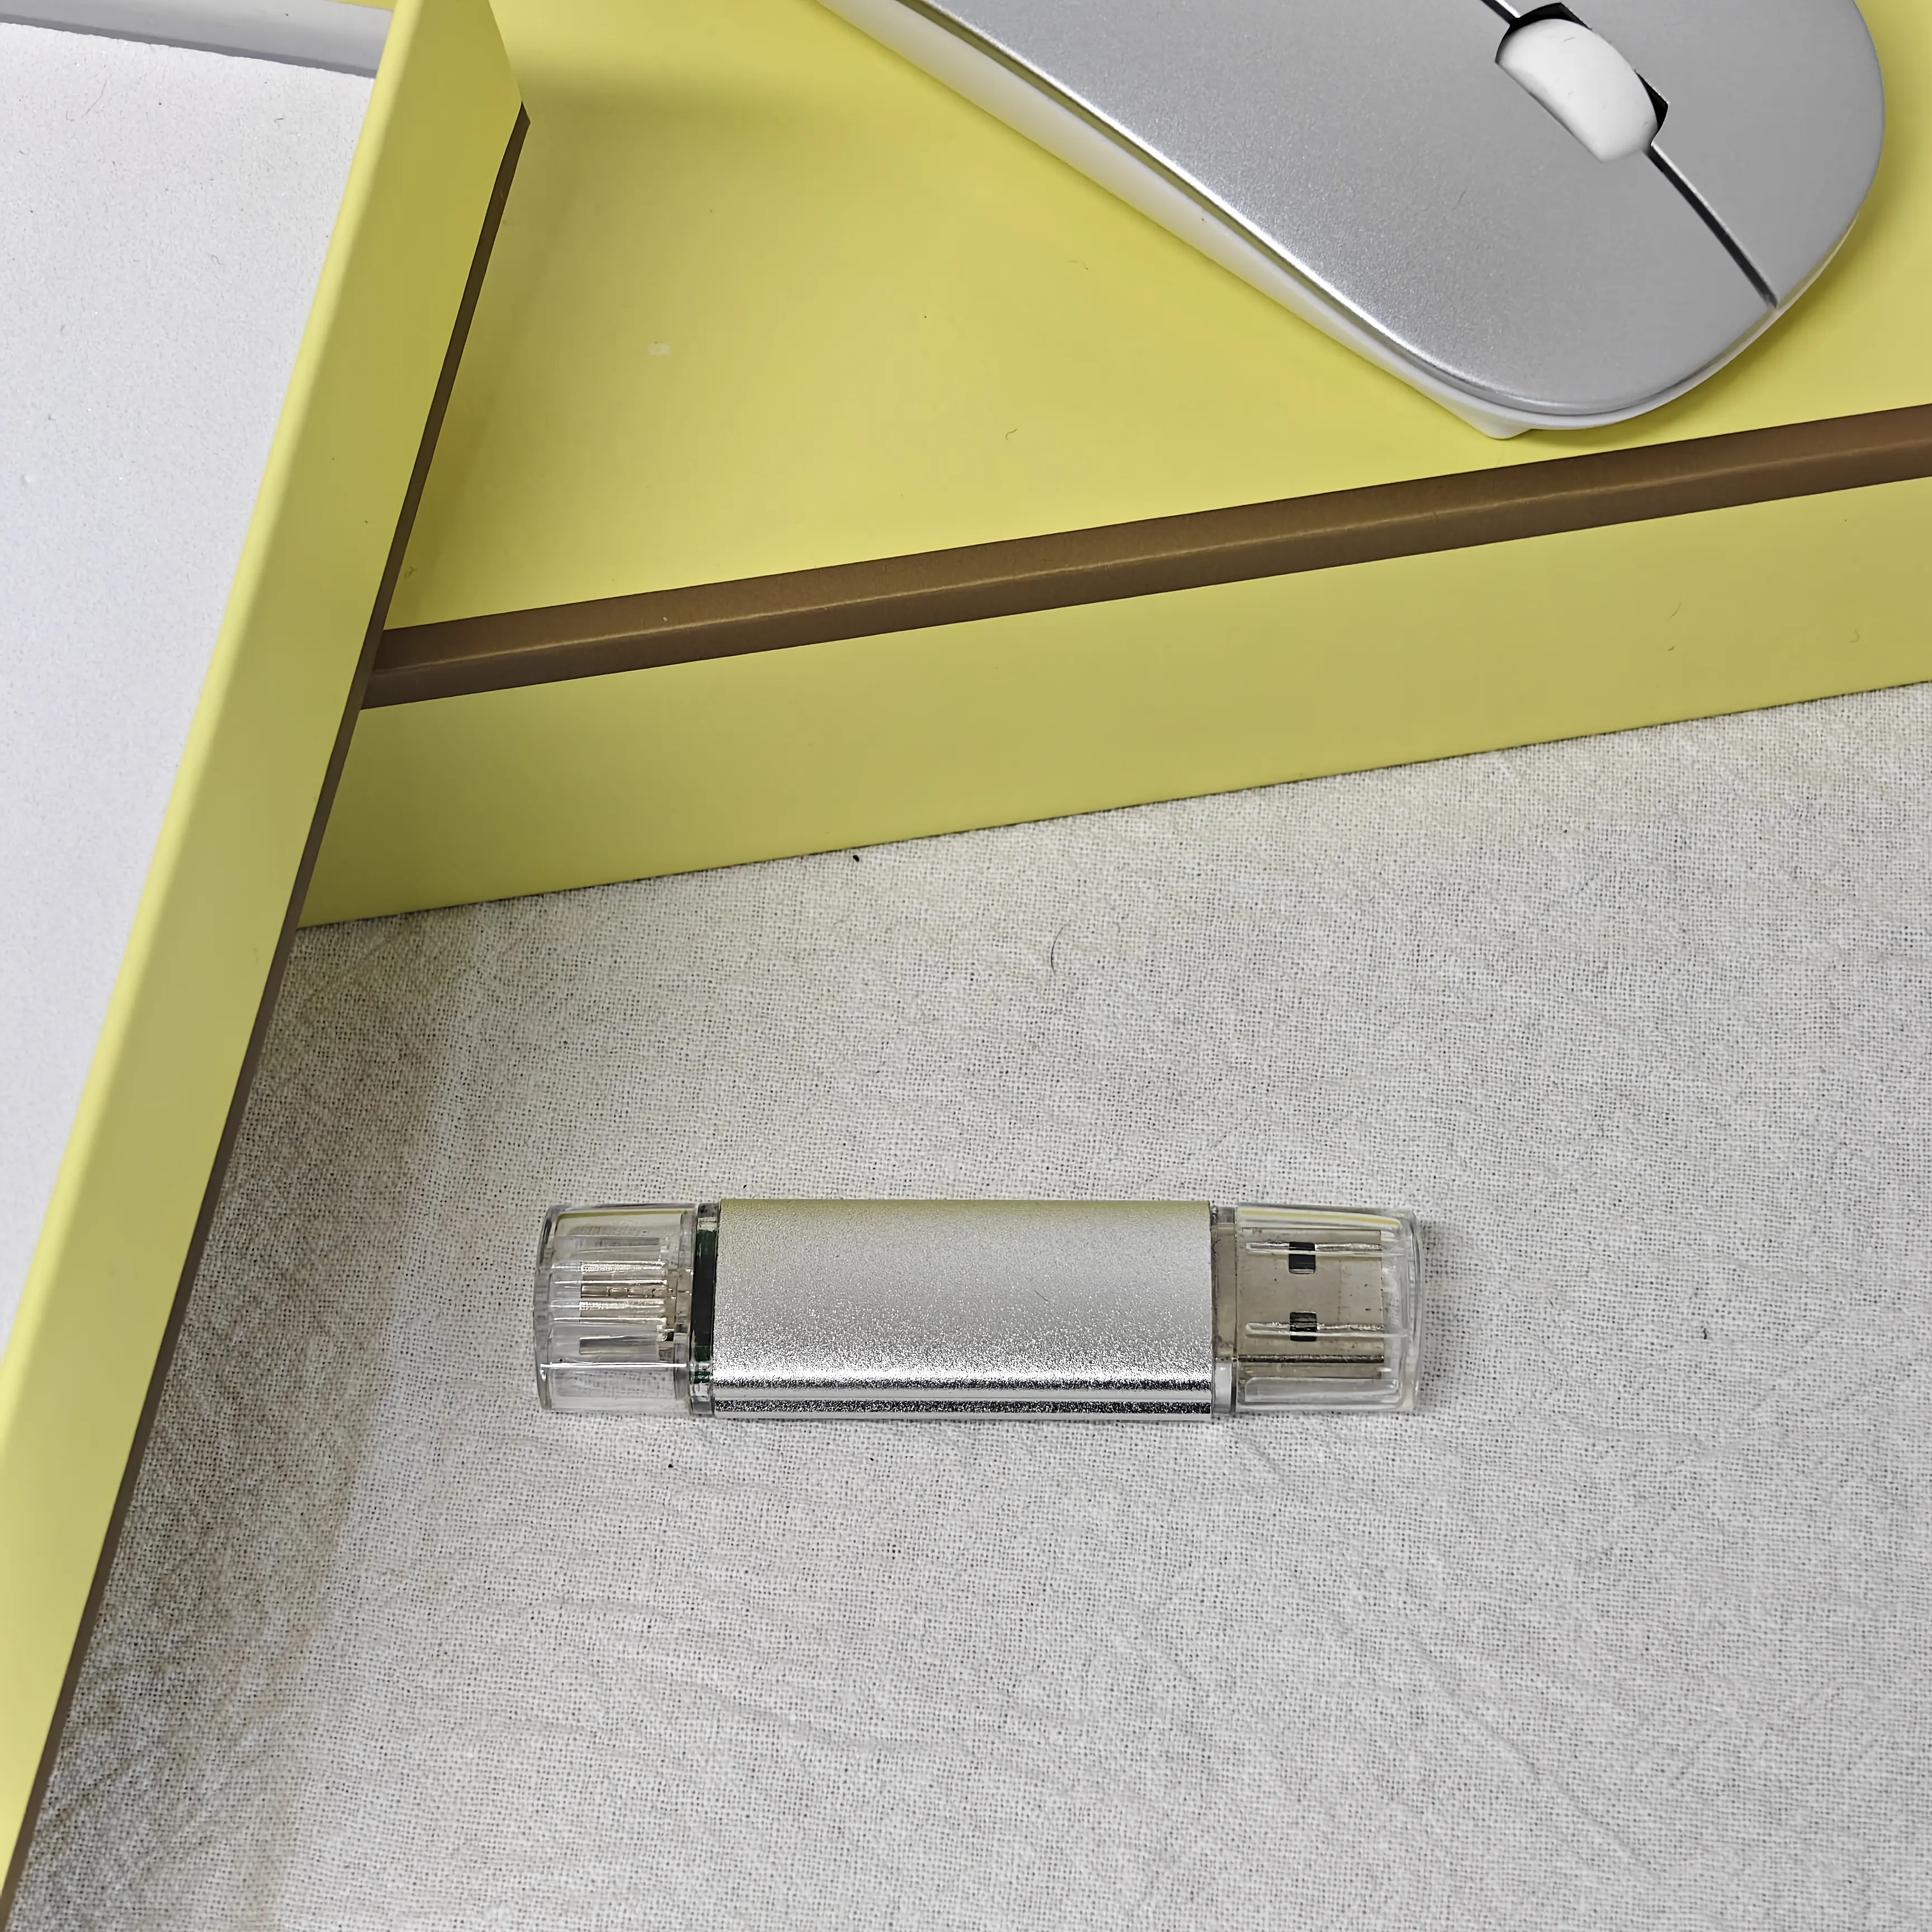 Boce Ratón inalámbrico Usb flash drive pen 3-en-1 Promociones de lujo personalizadas y artículos de negocios juegos de regalos corporativos